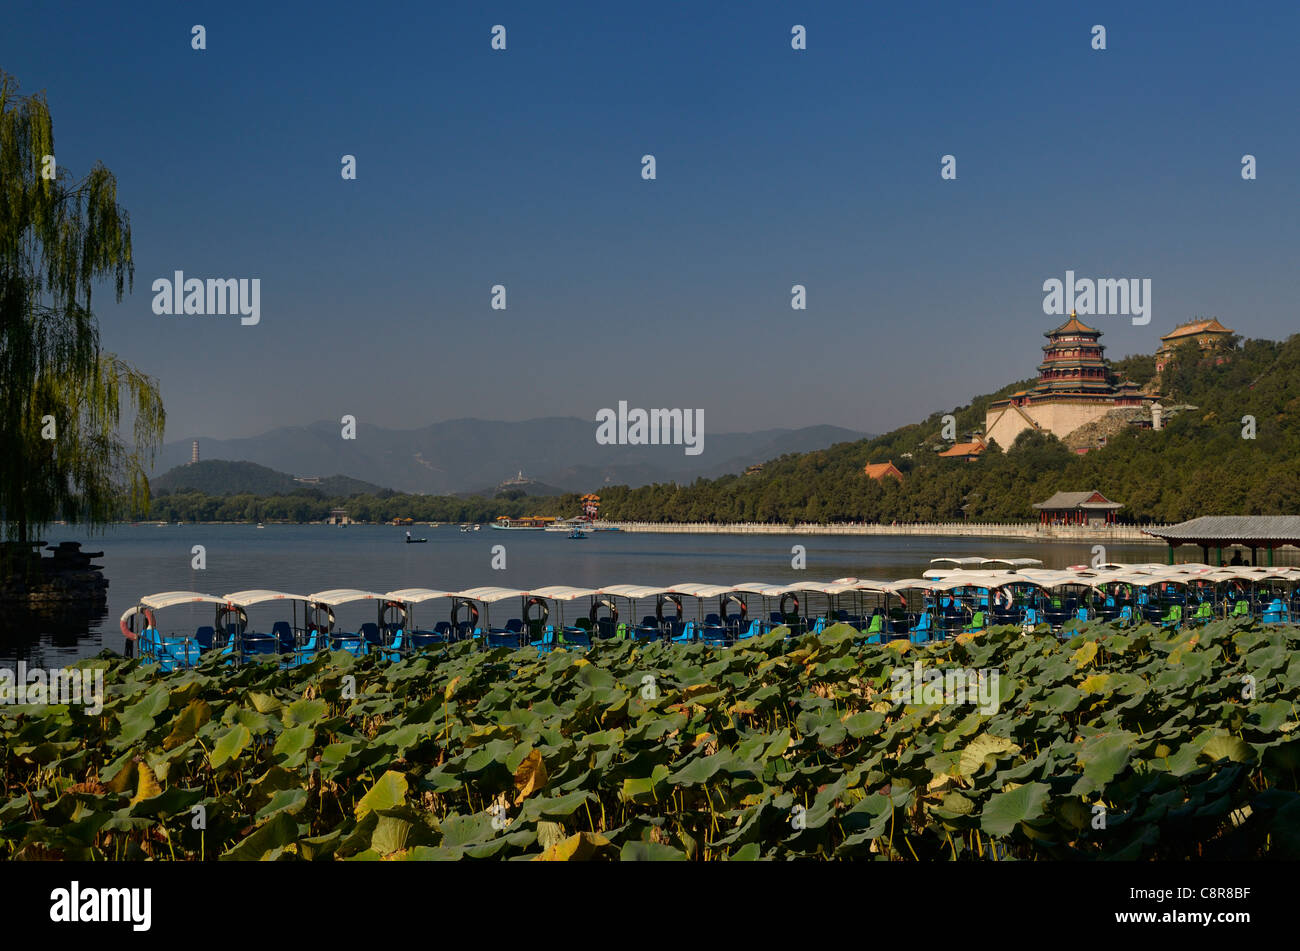 Pédalos et plantes lotus sur le Lac de Kunming avec parfum d'été au temple bouddhiste Palace Beijing Chine Banque D'Images